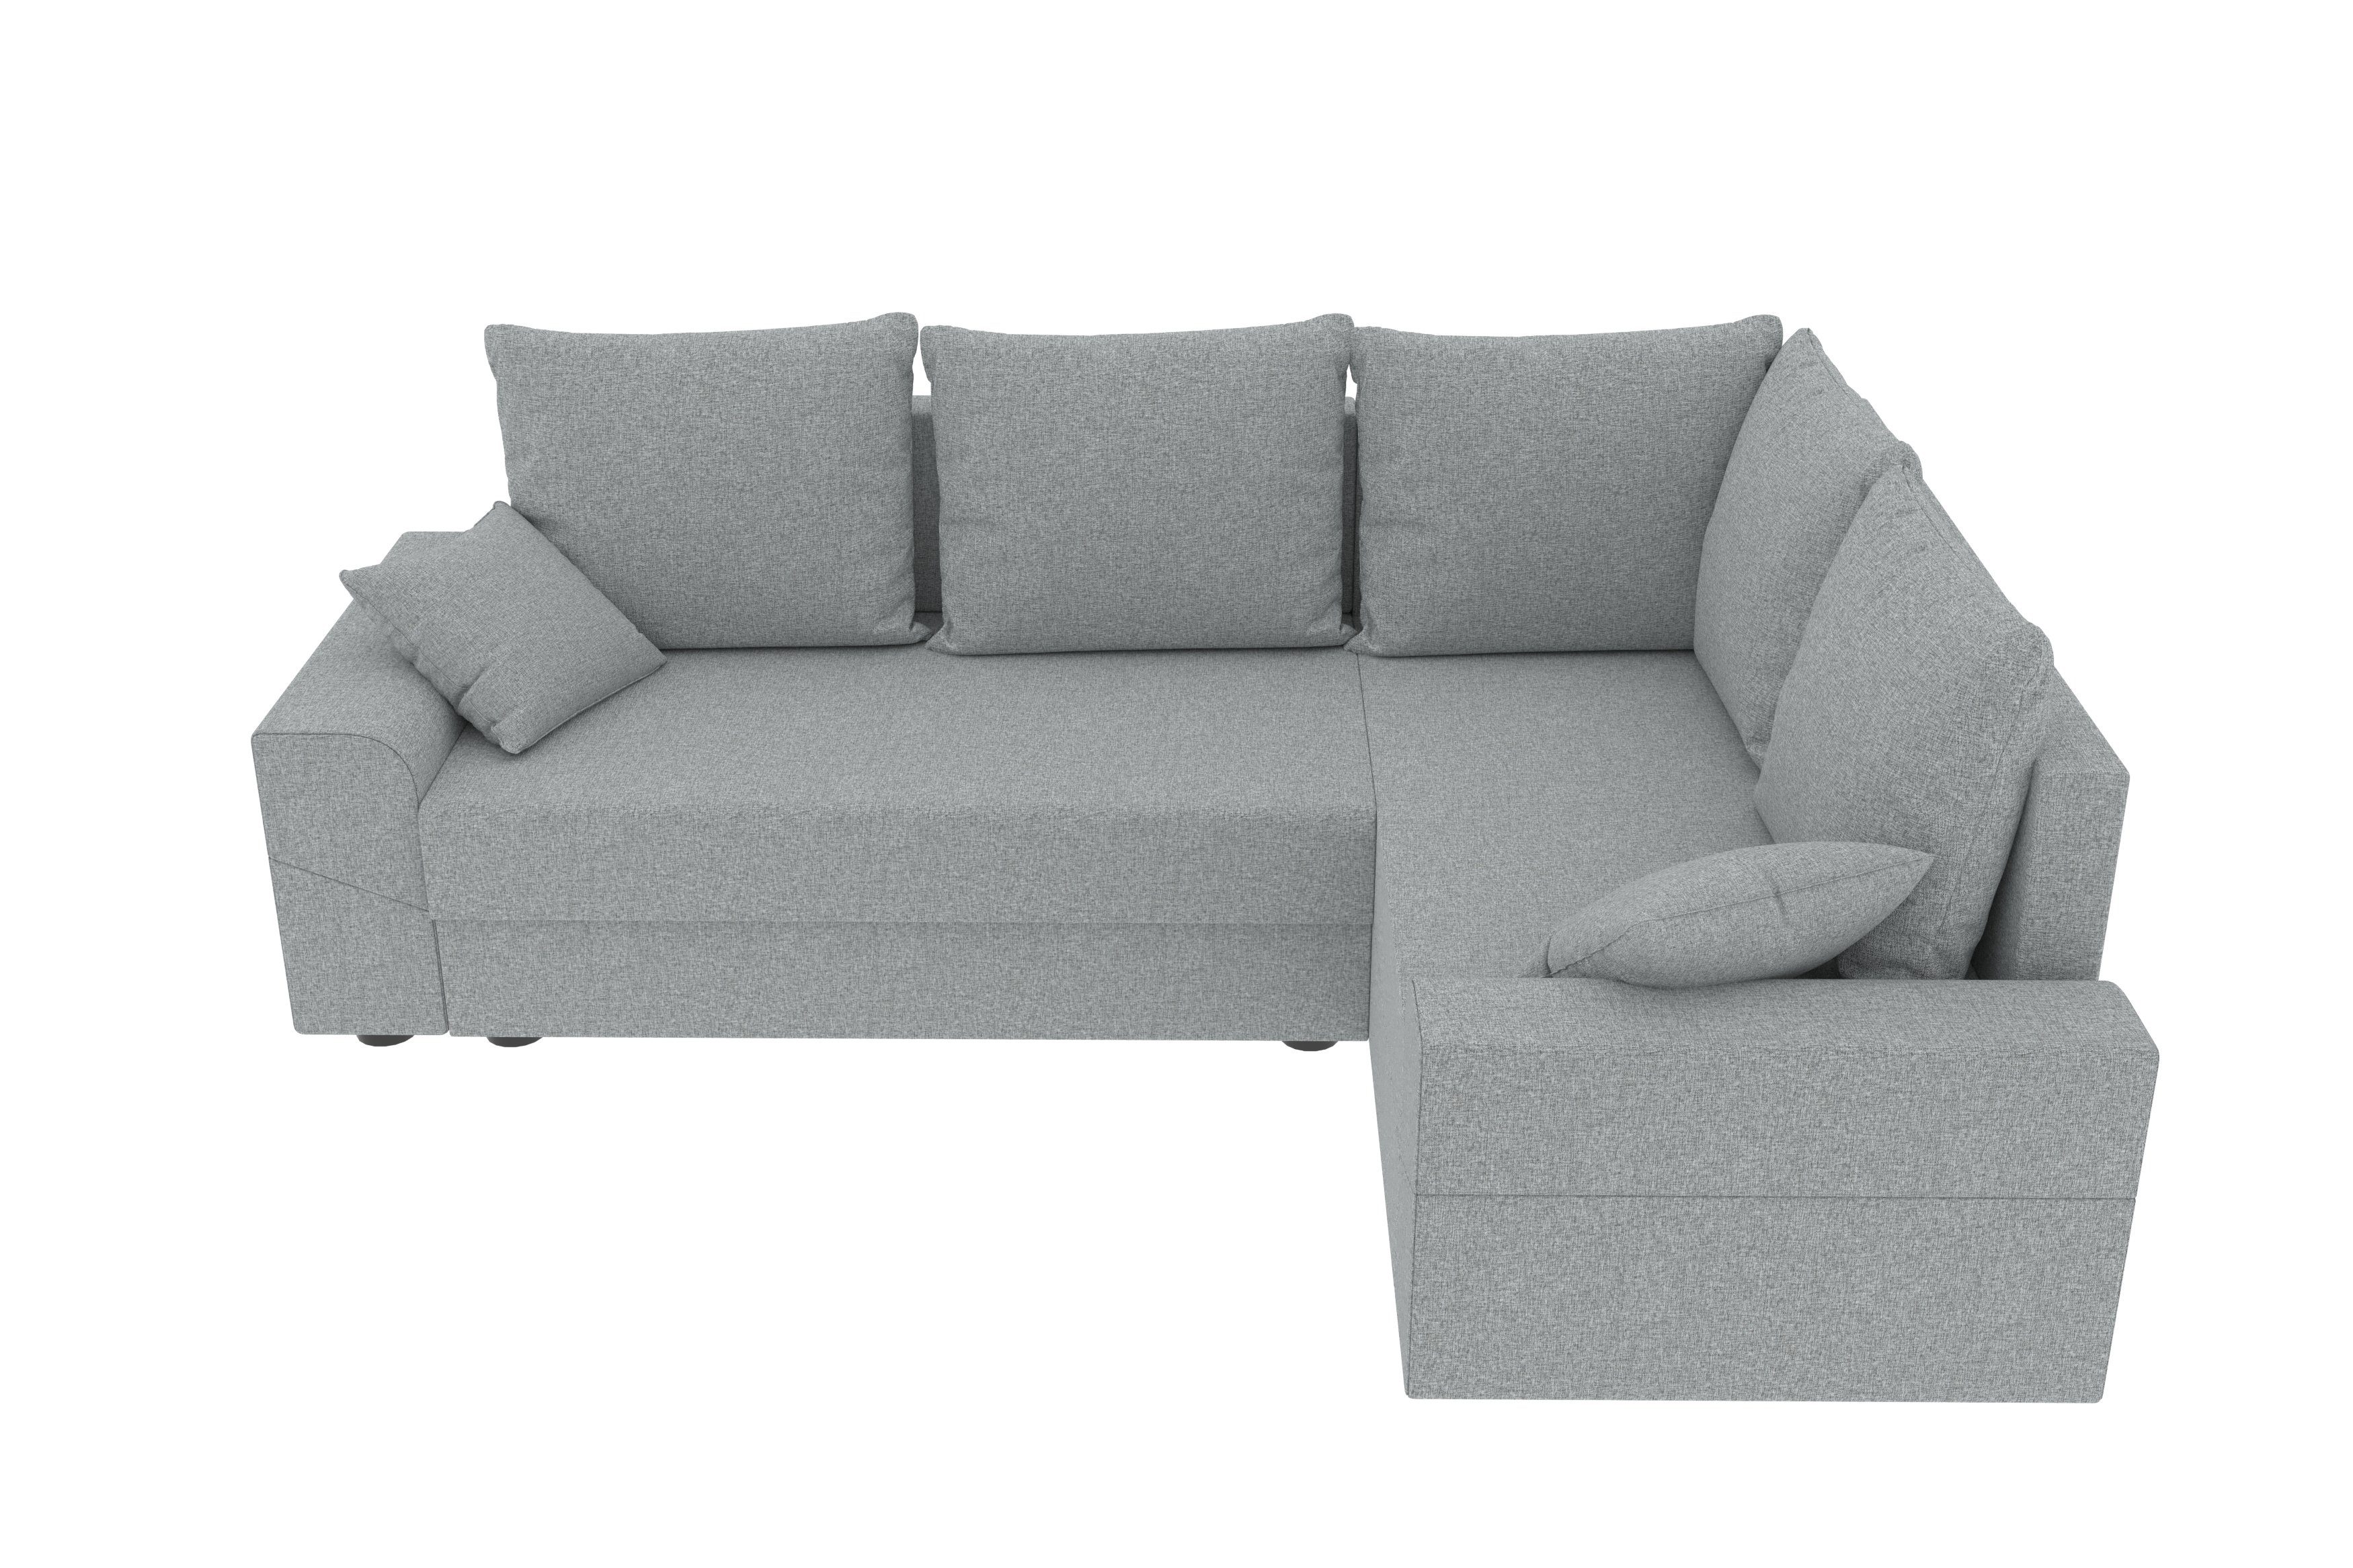 Bettfunktion, Design Ecksofa mit Montero, mit Bettkasten, Stylefy L-Form, Eckcouch, Sofa, Sitzkomfort, Modern